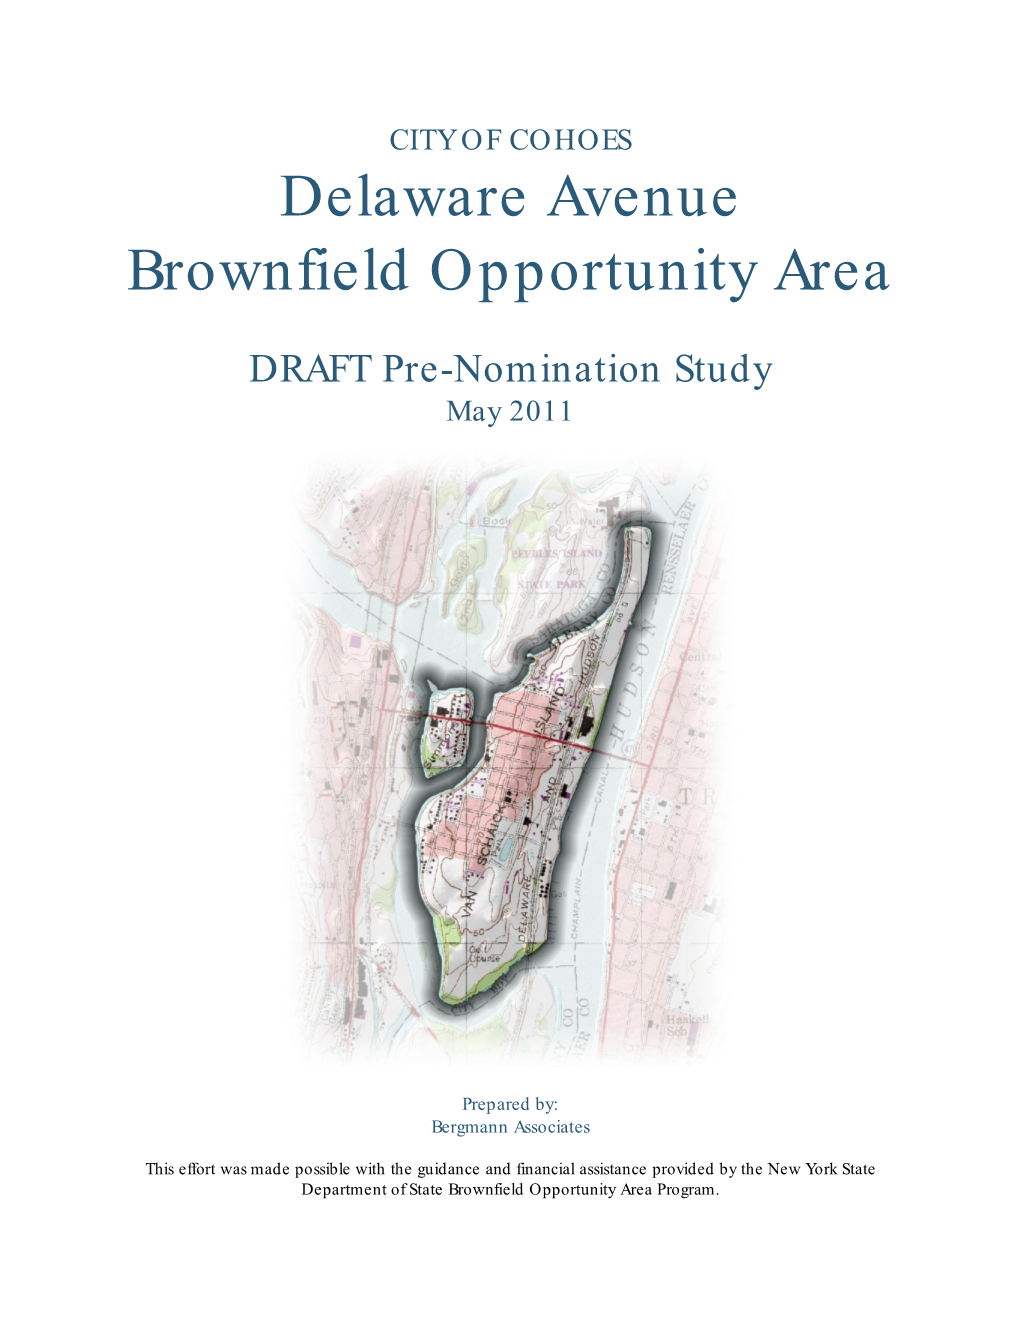 Delaware Ave BOA DRAFT Pre-Nomination Study